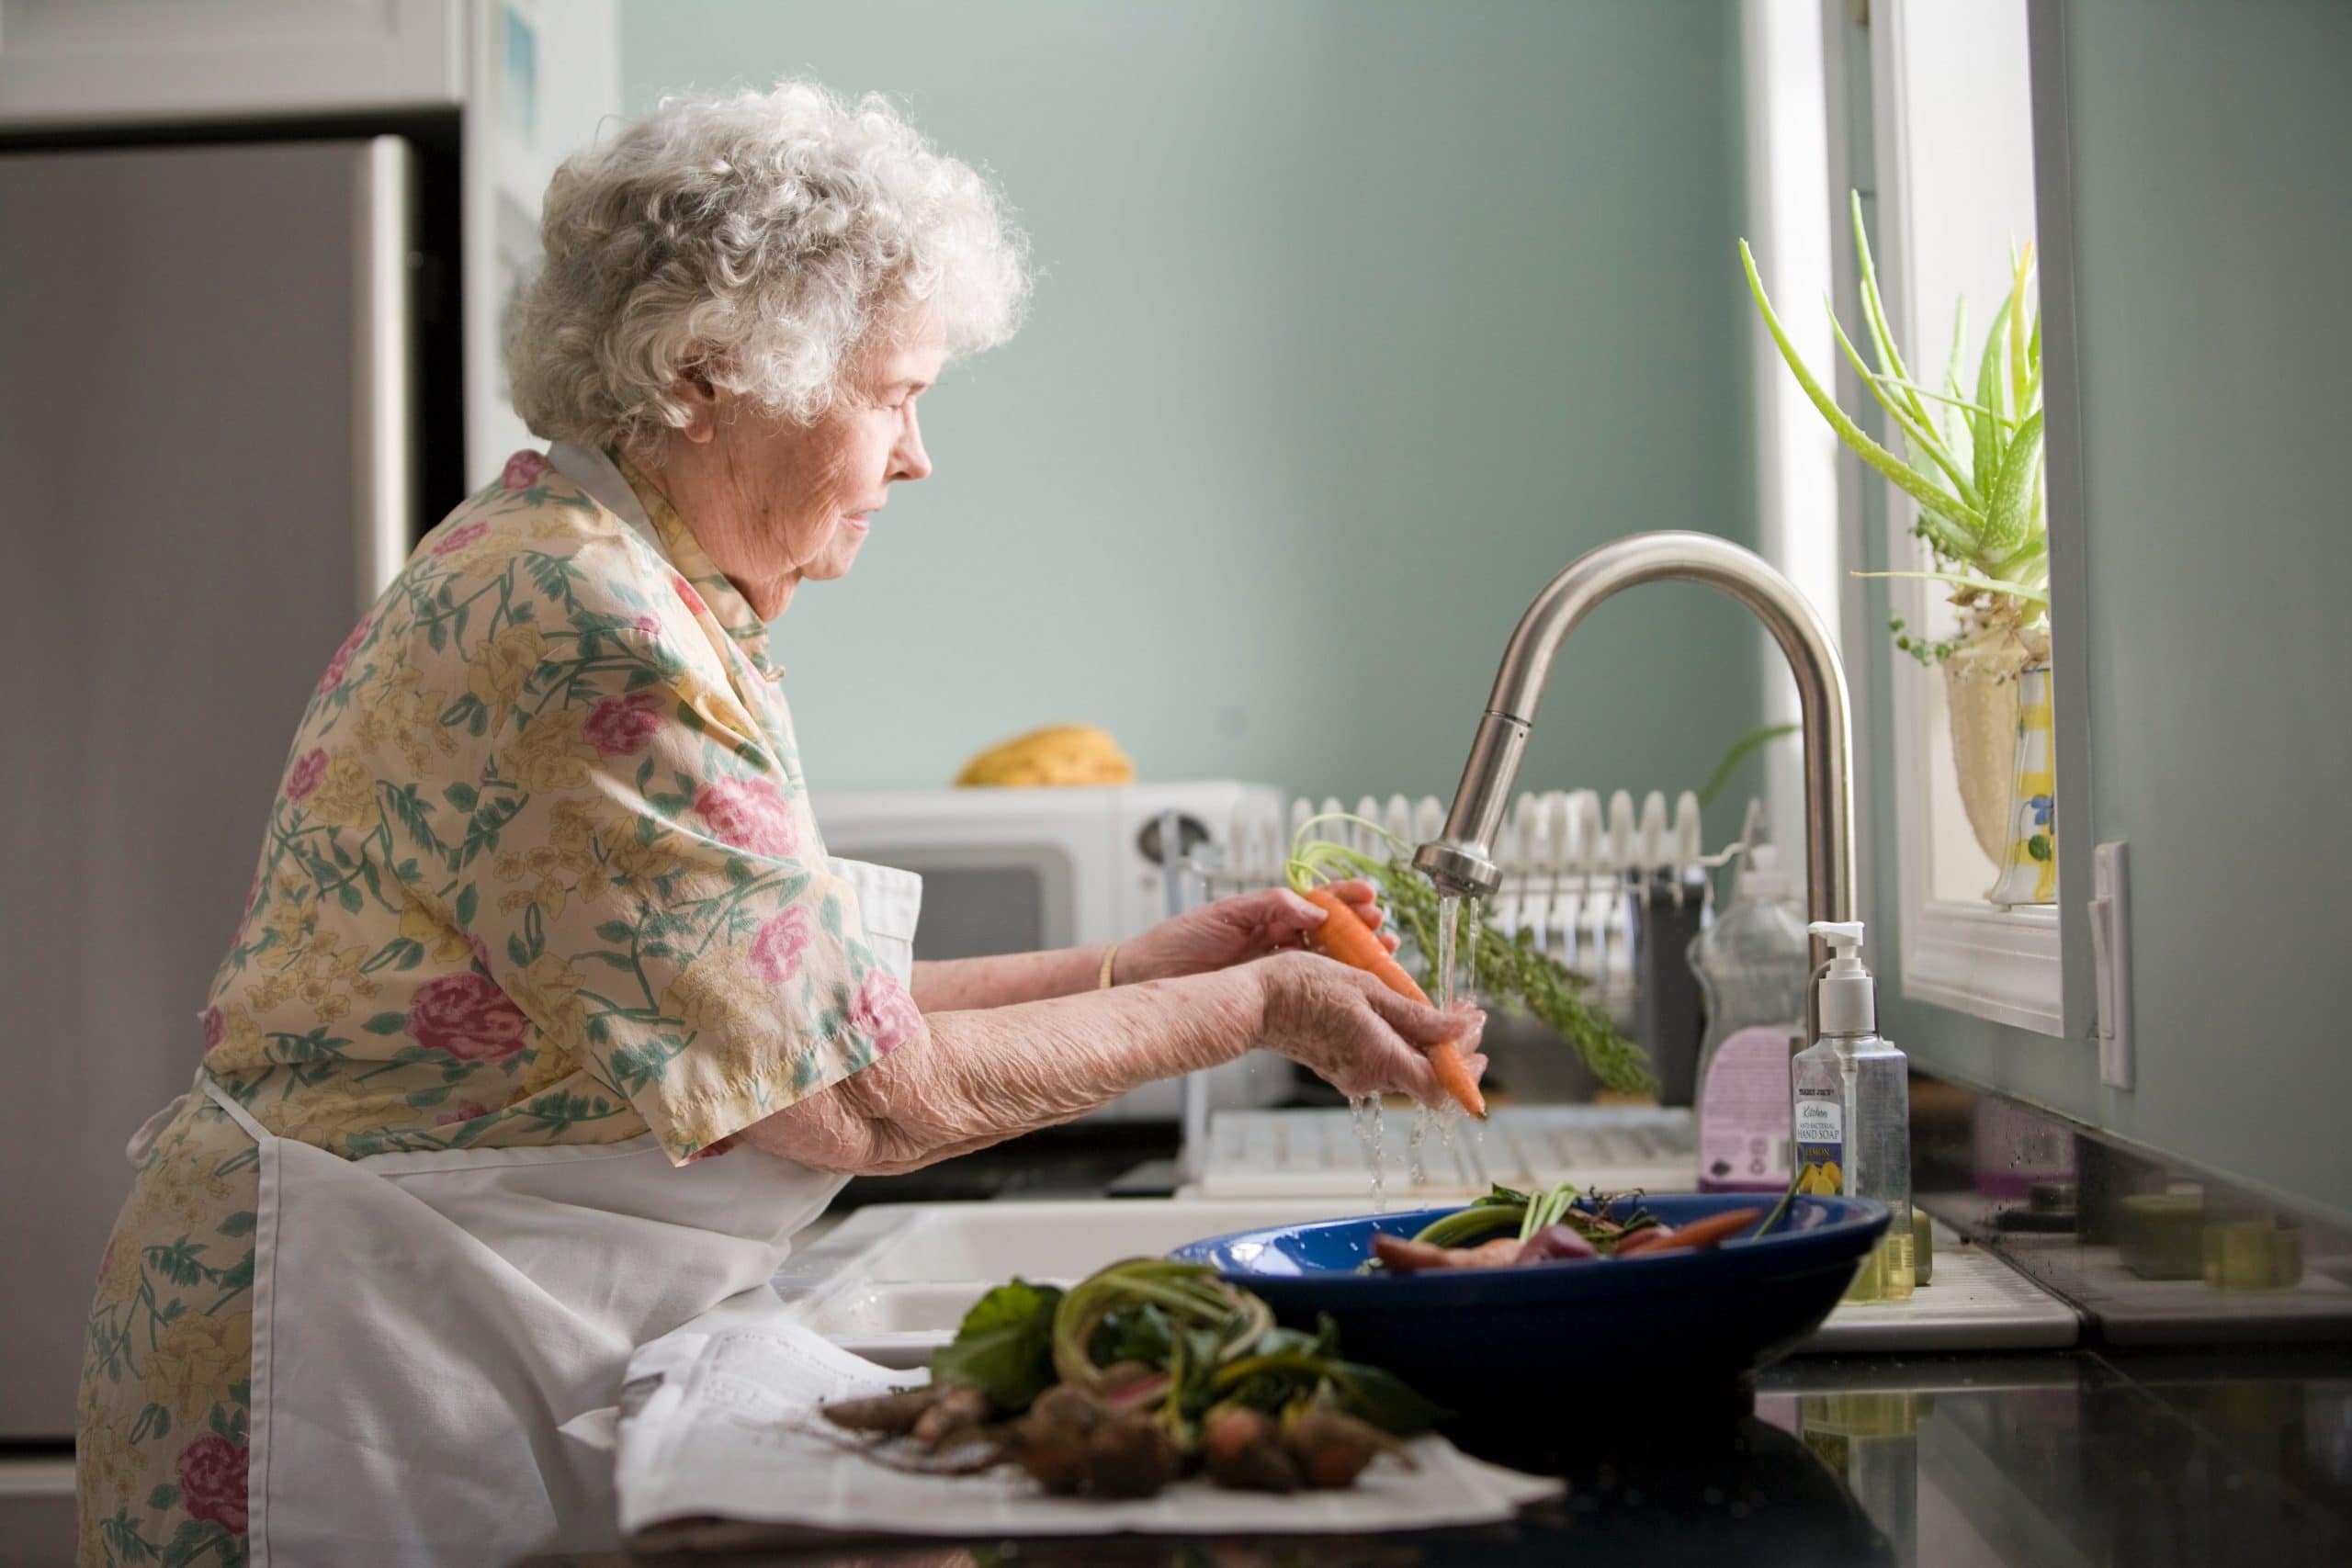 elderly woman washing dishes in kitchen